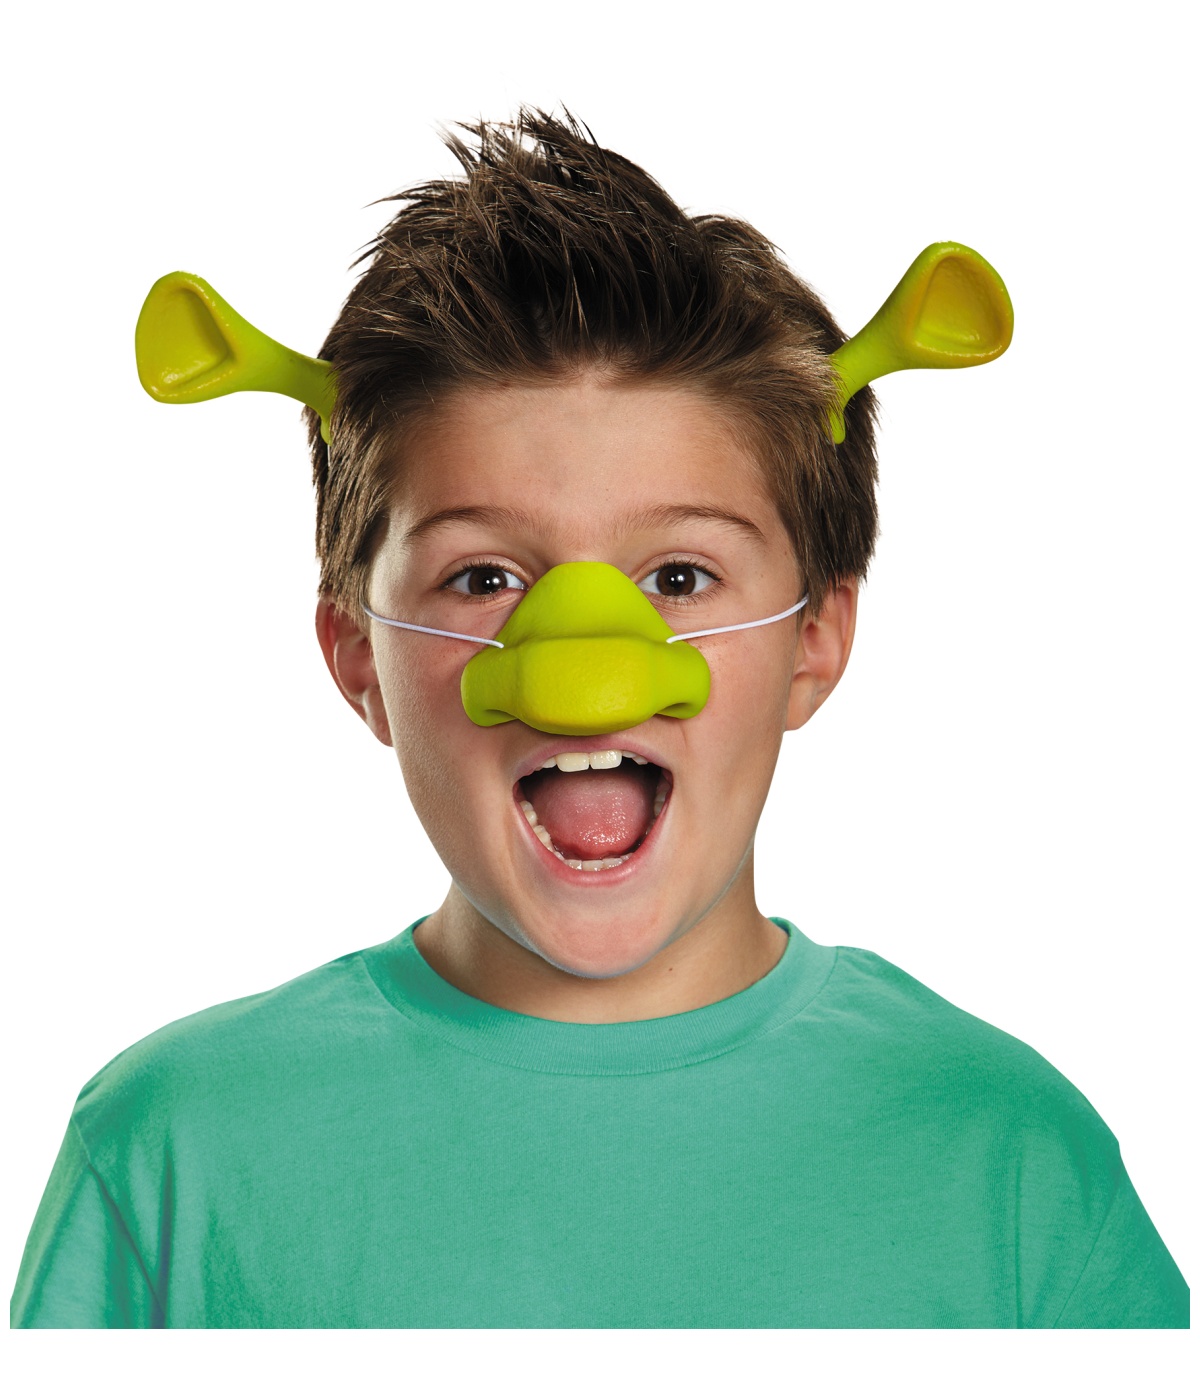  Boys Shrek Costume Kit